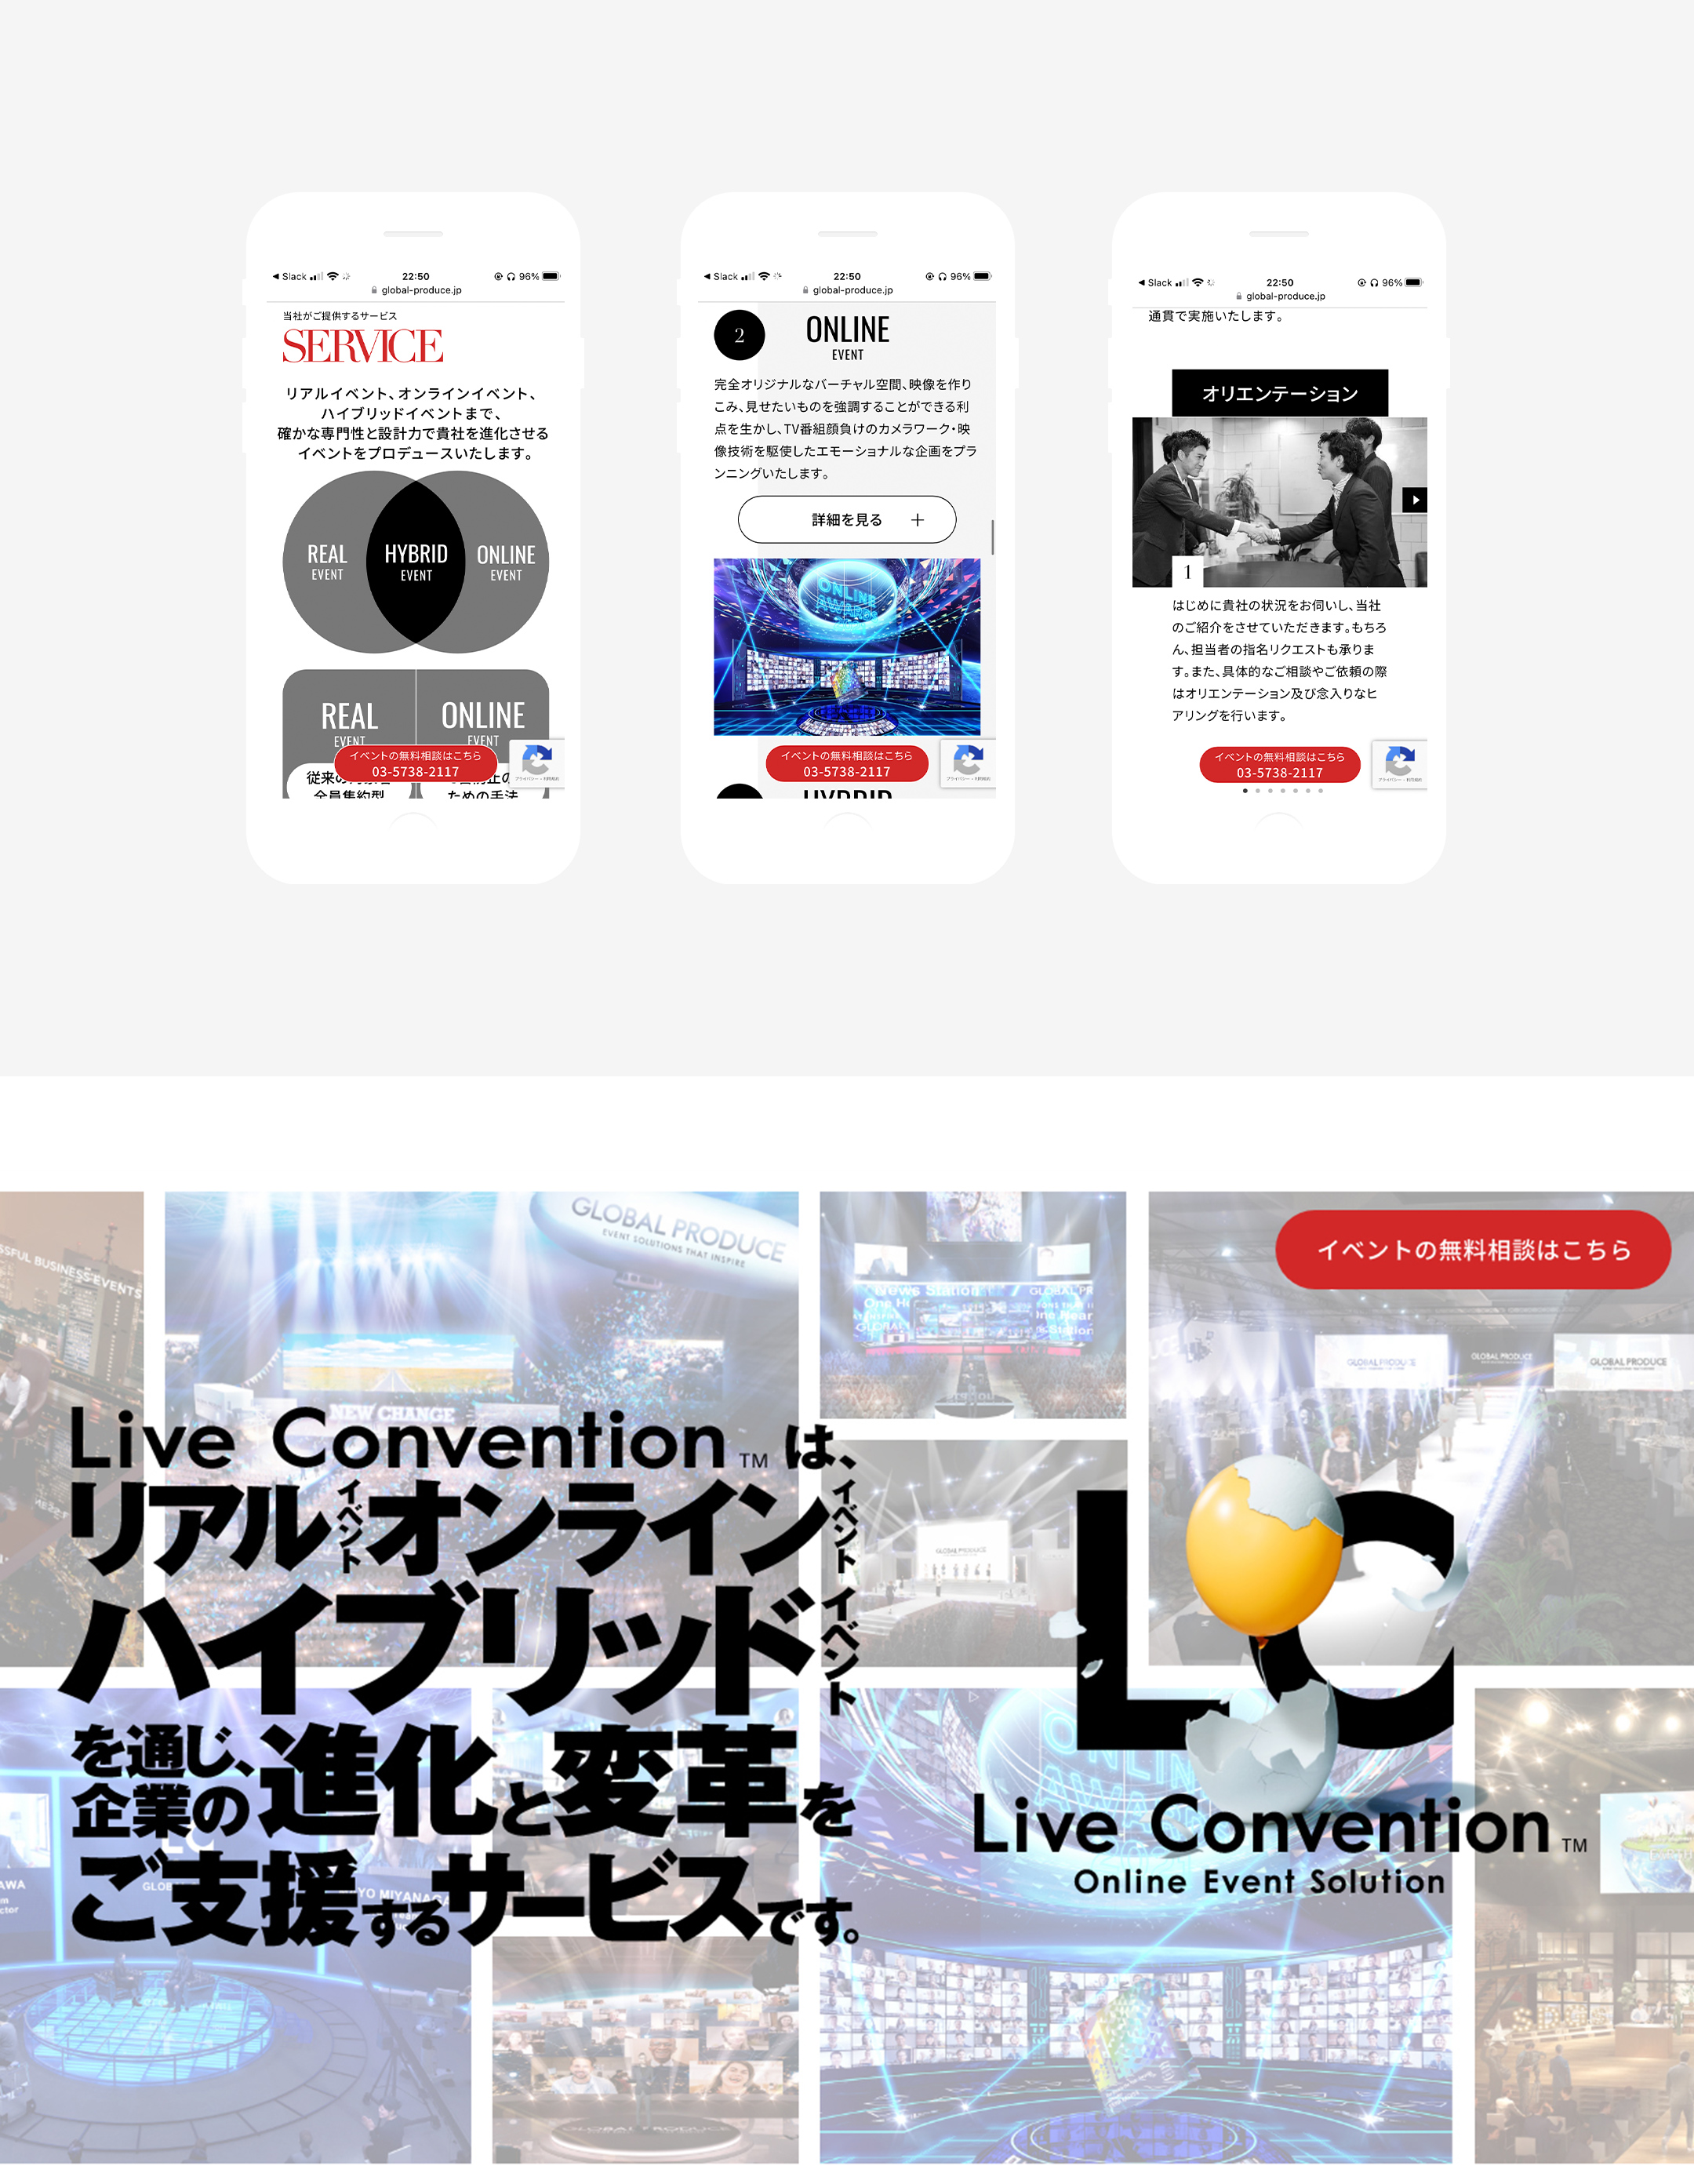 株式会社グローバルプロデュース / Live Convention リスティング LP 制作